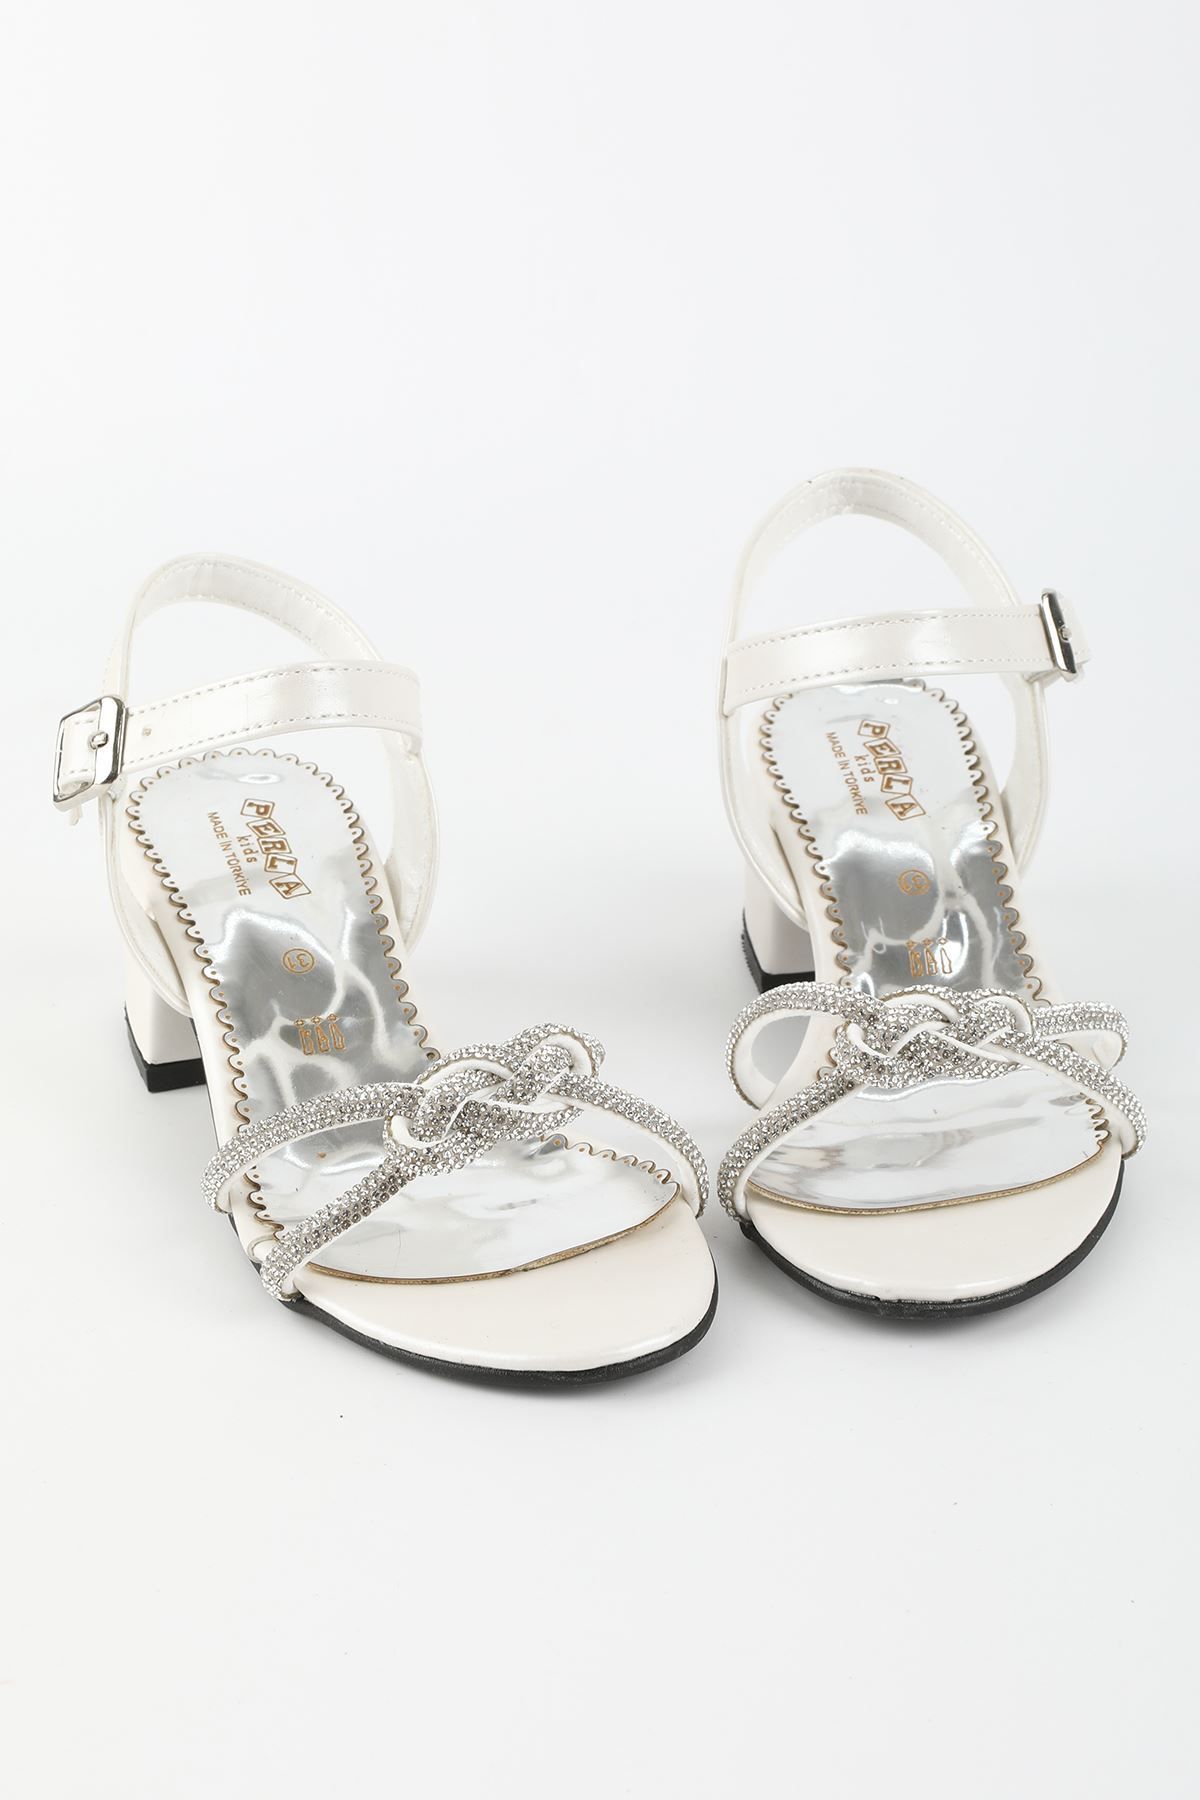 İeg Perla Kids Kız Çocuk Topuklu Örgü Taşlı Abiye Ayakkabı&sandalet(26-36 NUM.)